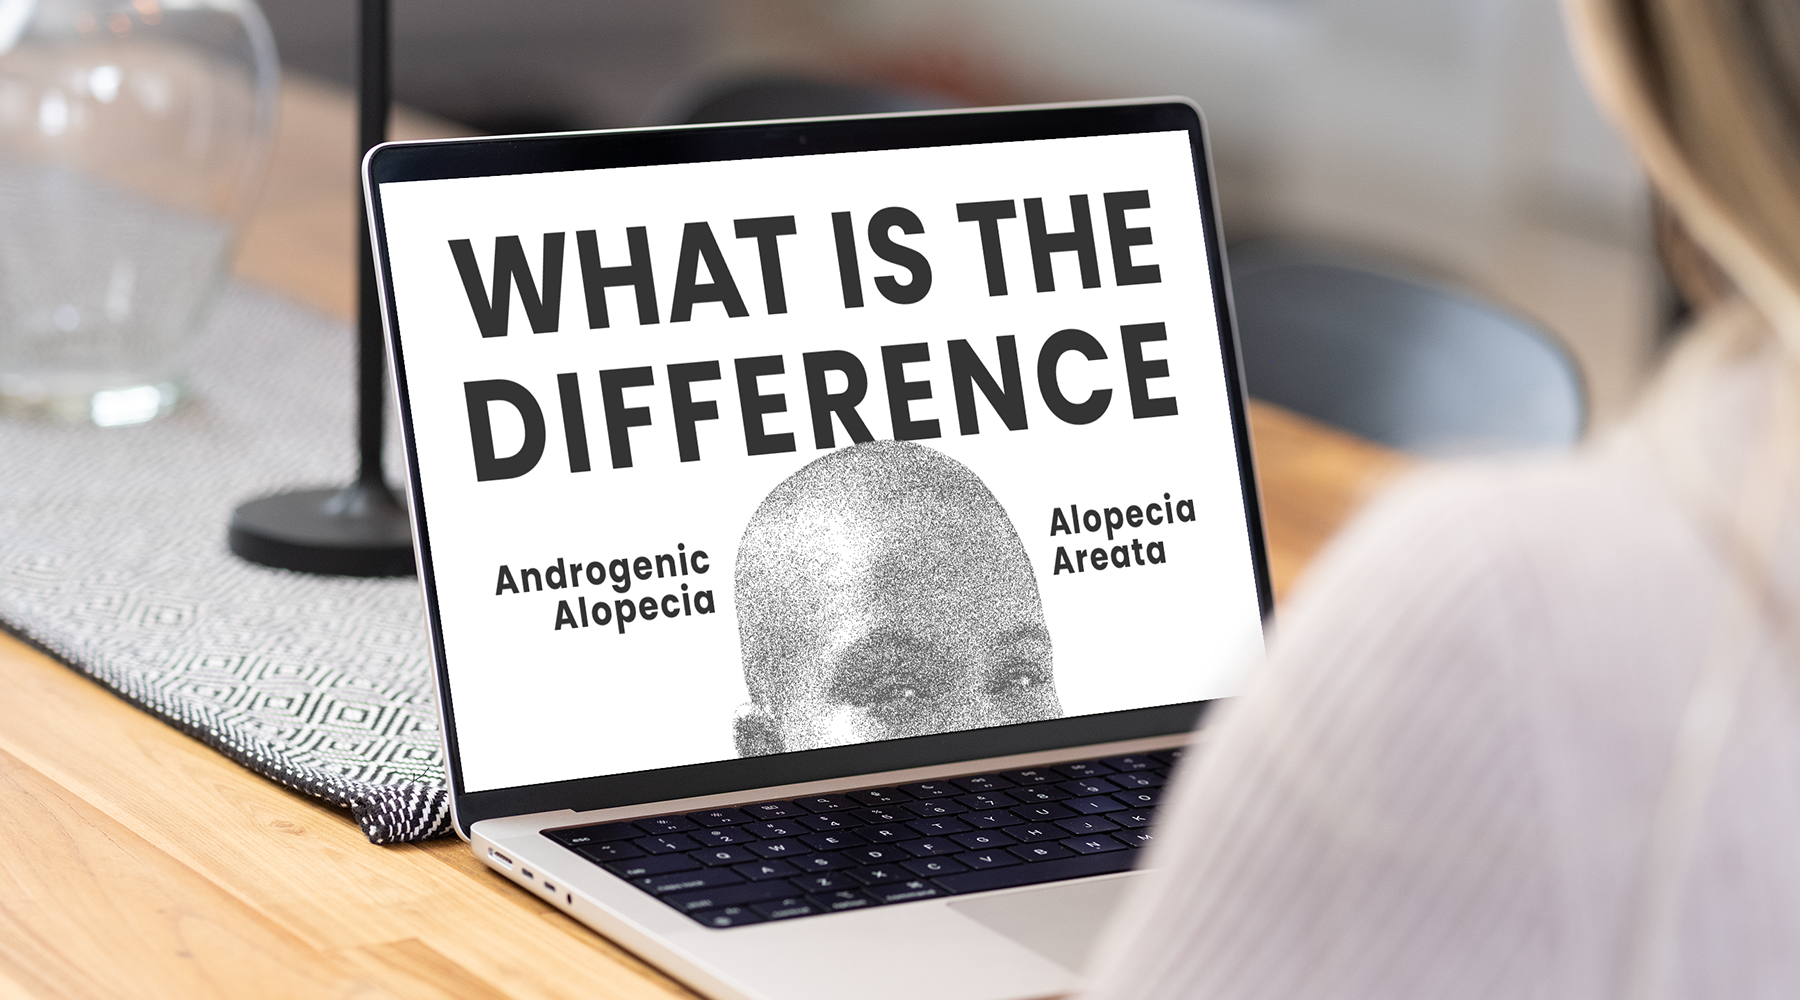 androgenic alopecia vs alopecia areata